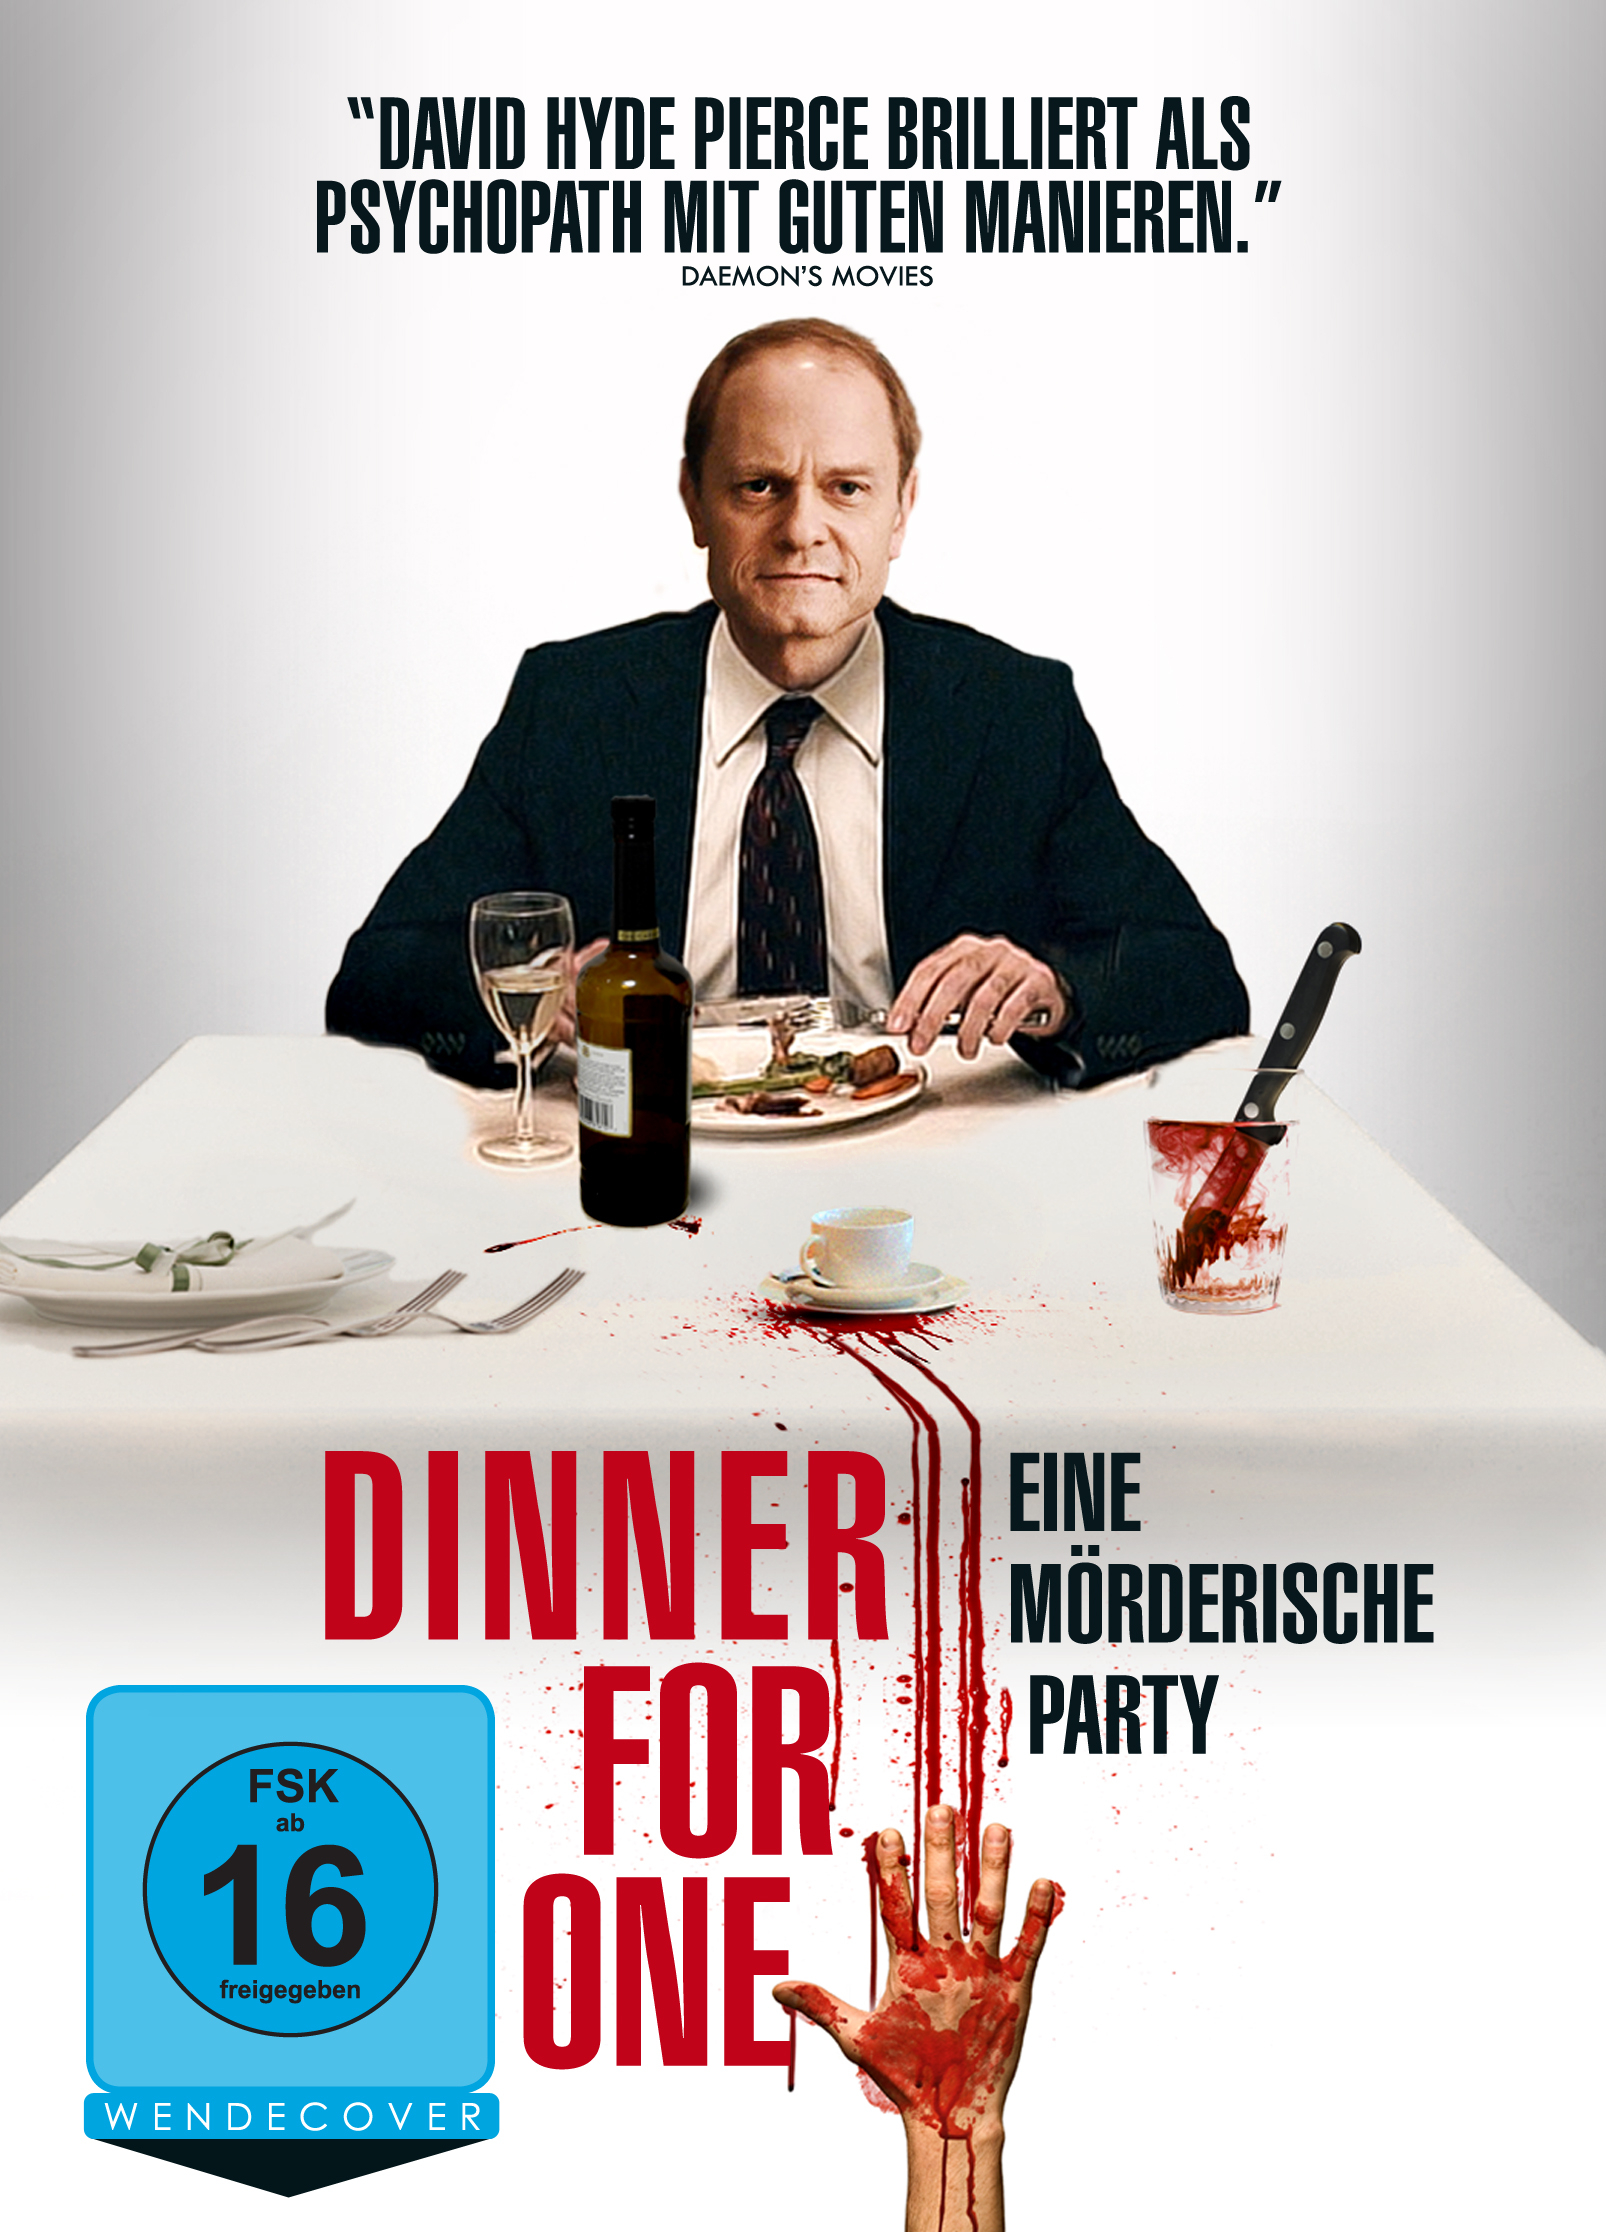 Dinner For One – Eine mörderische Party | Film-Rezensionen.de